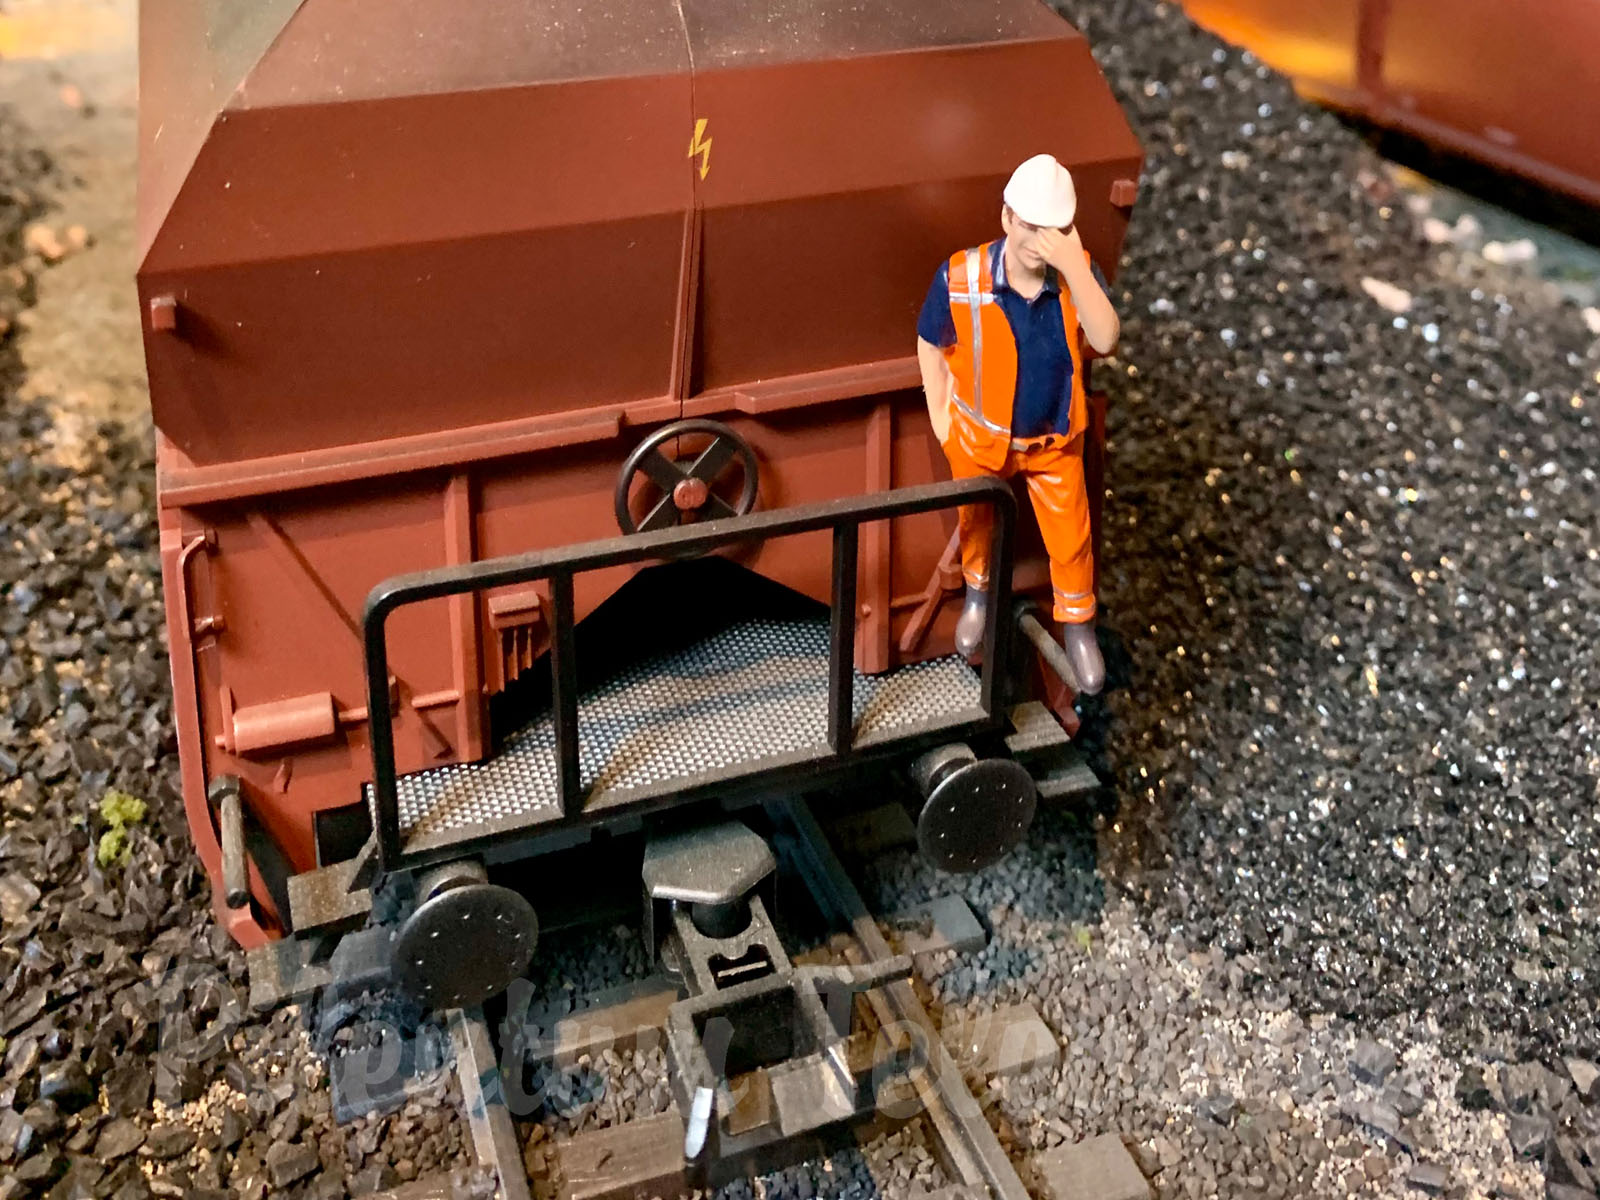 Plastico ferroviario di Arnold in scala 1:32 - Un mondo in miniatura per le locomotive a vapore